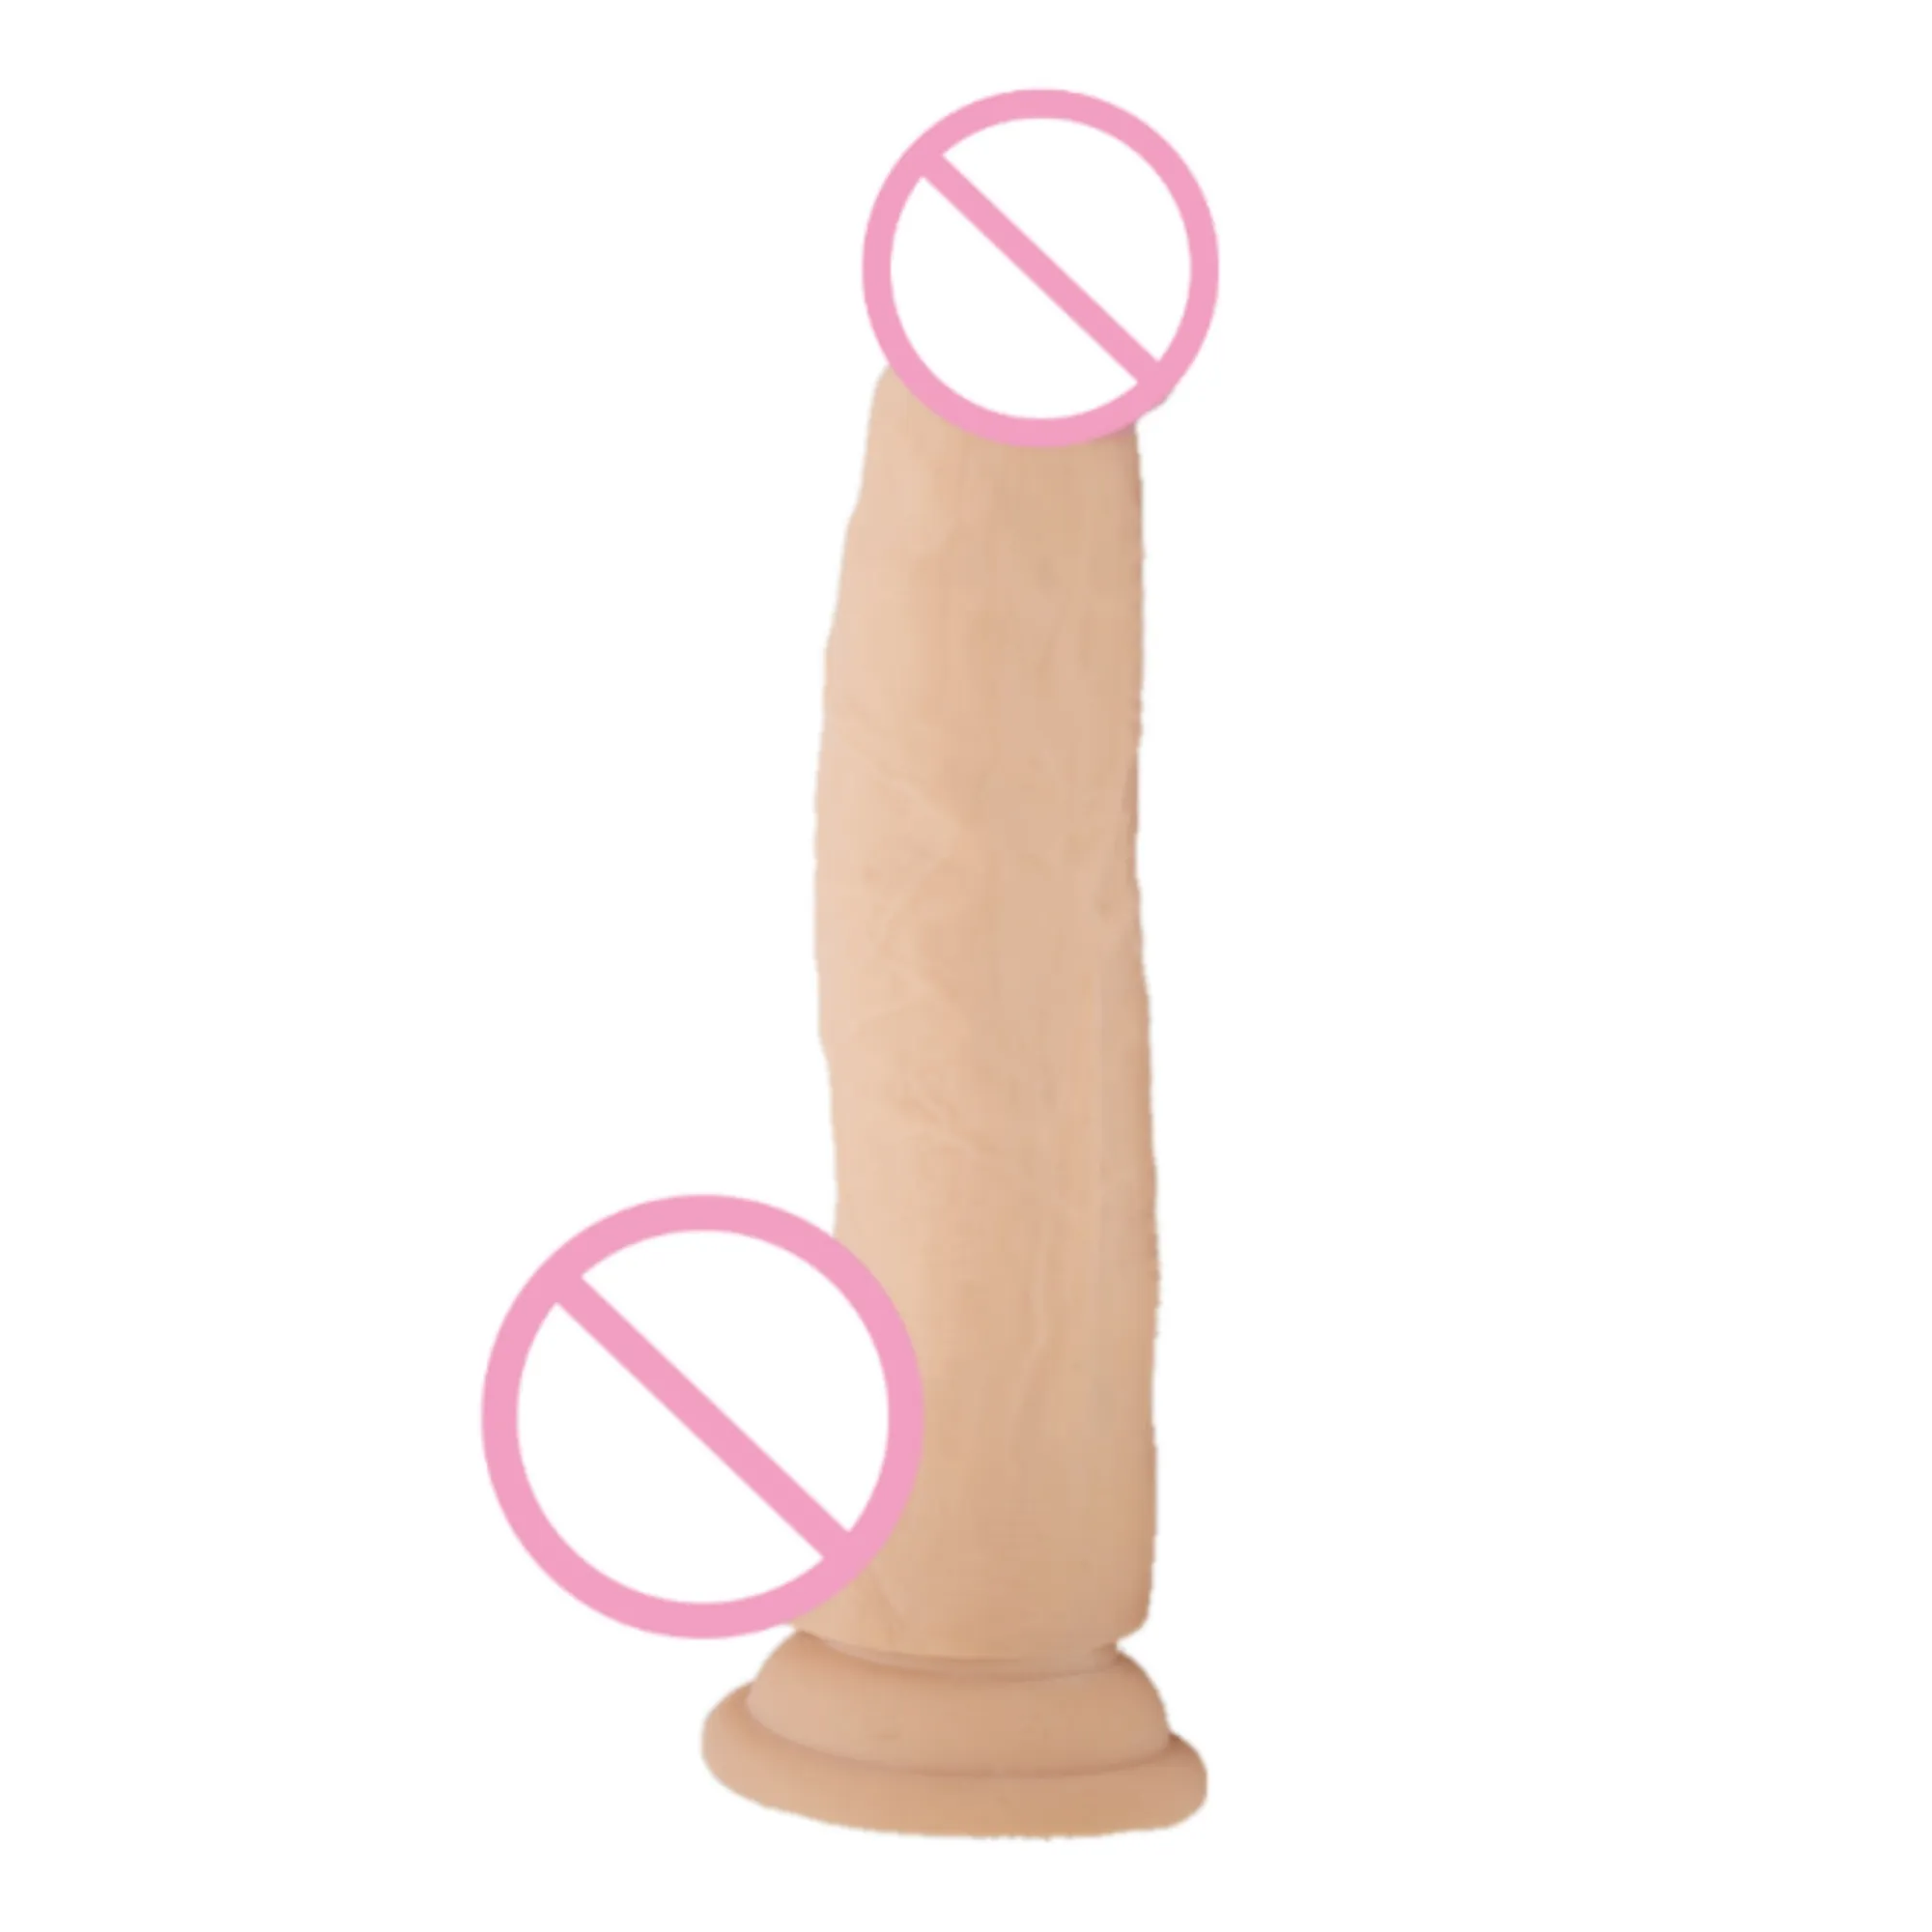 Seksi oyuncaklar porno yetişkin seks dildo vibratör kadınlar için yapay penis erkekler için seks pussi cam yapay penis fabrika fiyat doğrudan xxl x seks